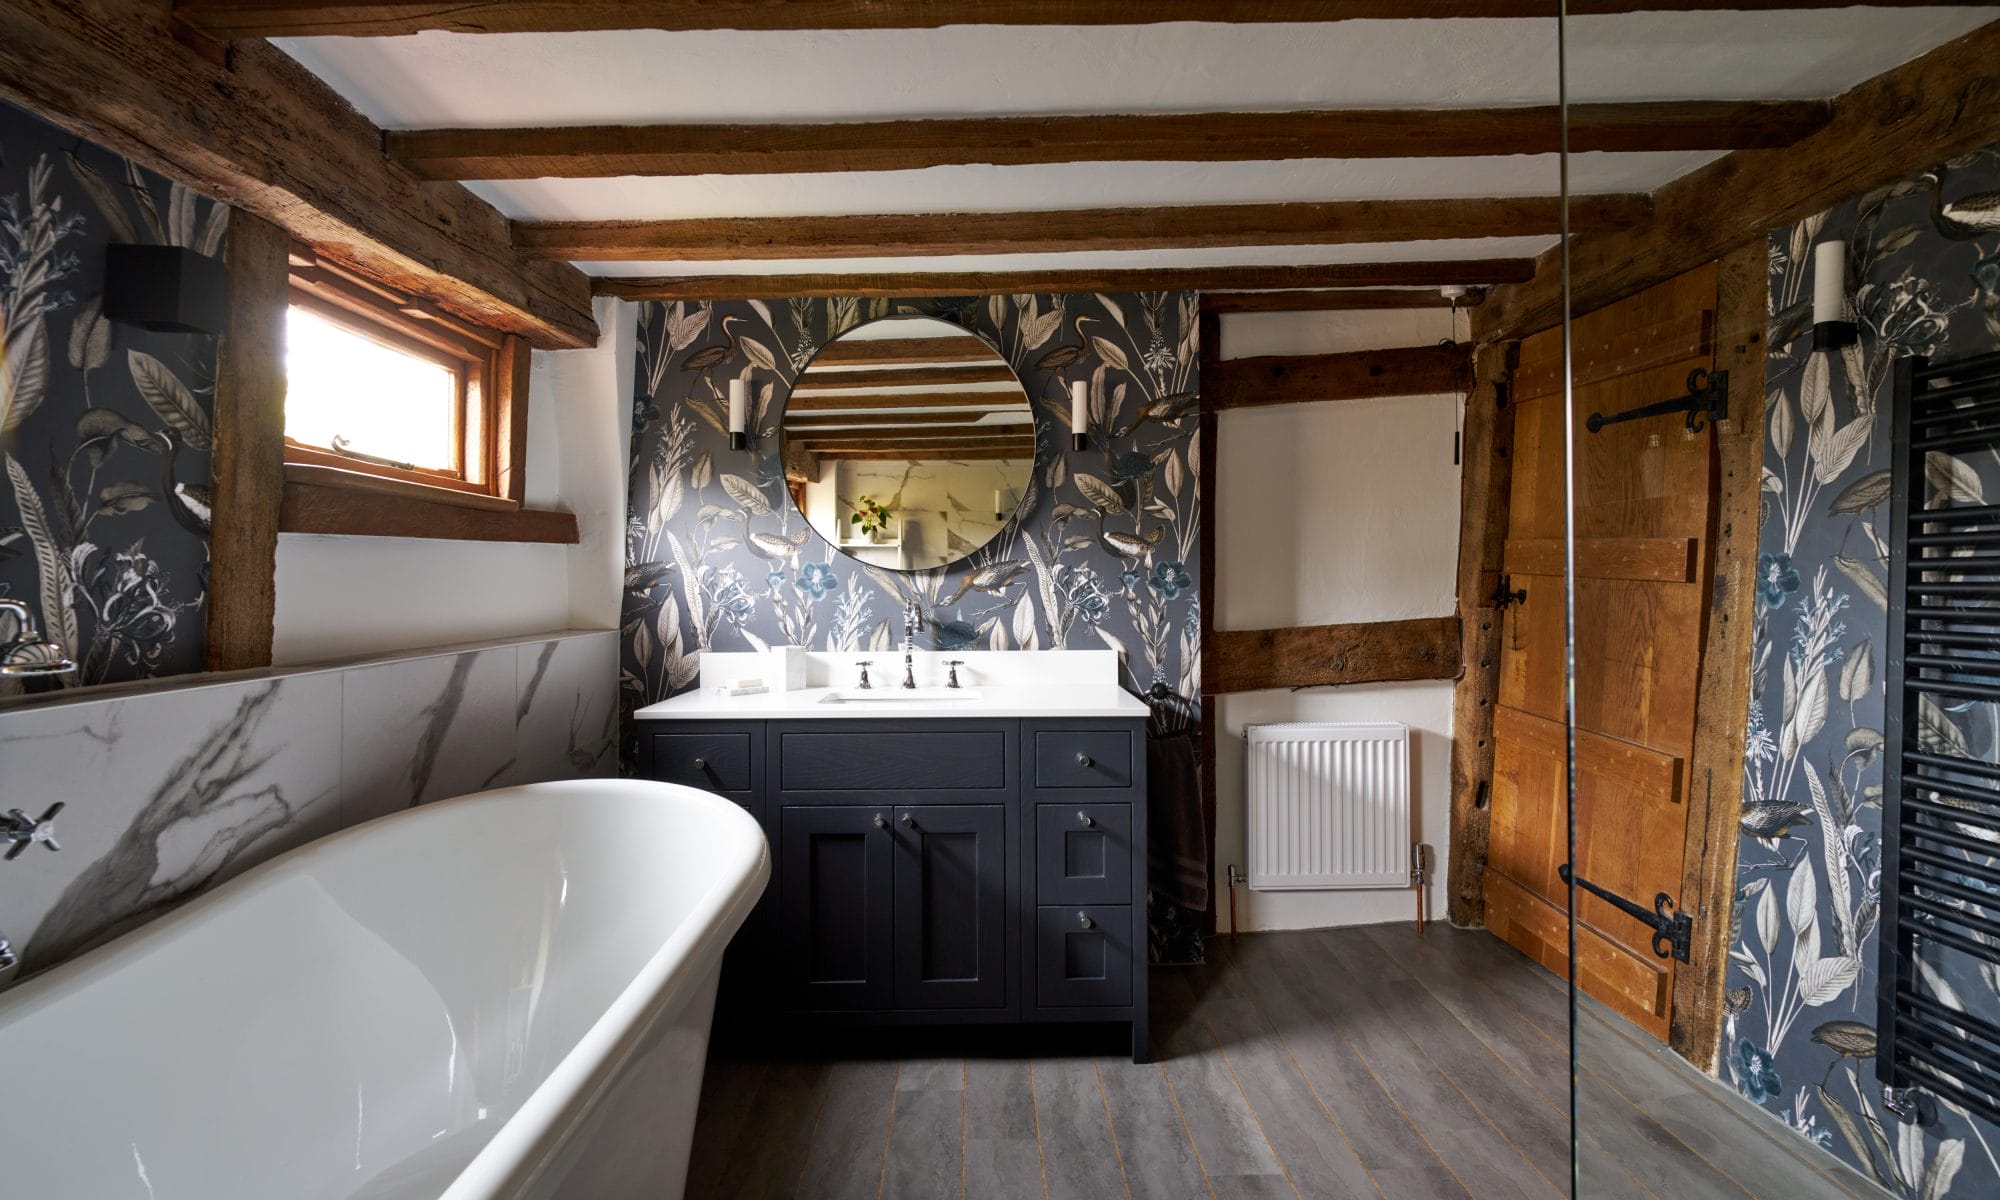 Bespoke Painted Shaker Bathroom Vanity with Black Mirror above